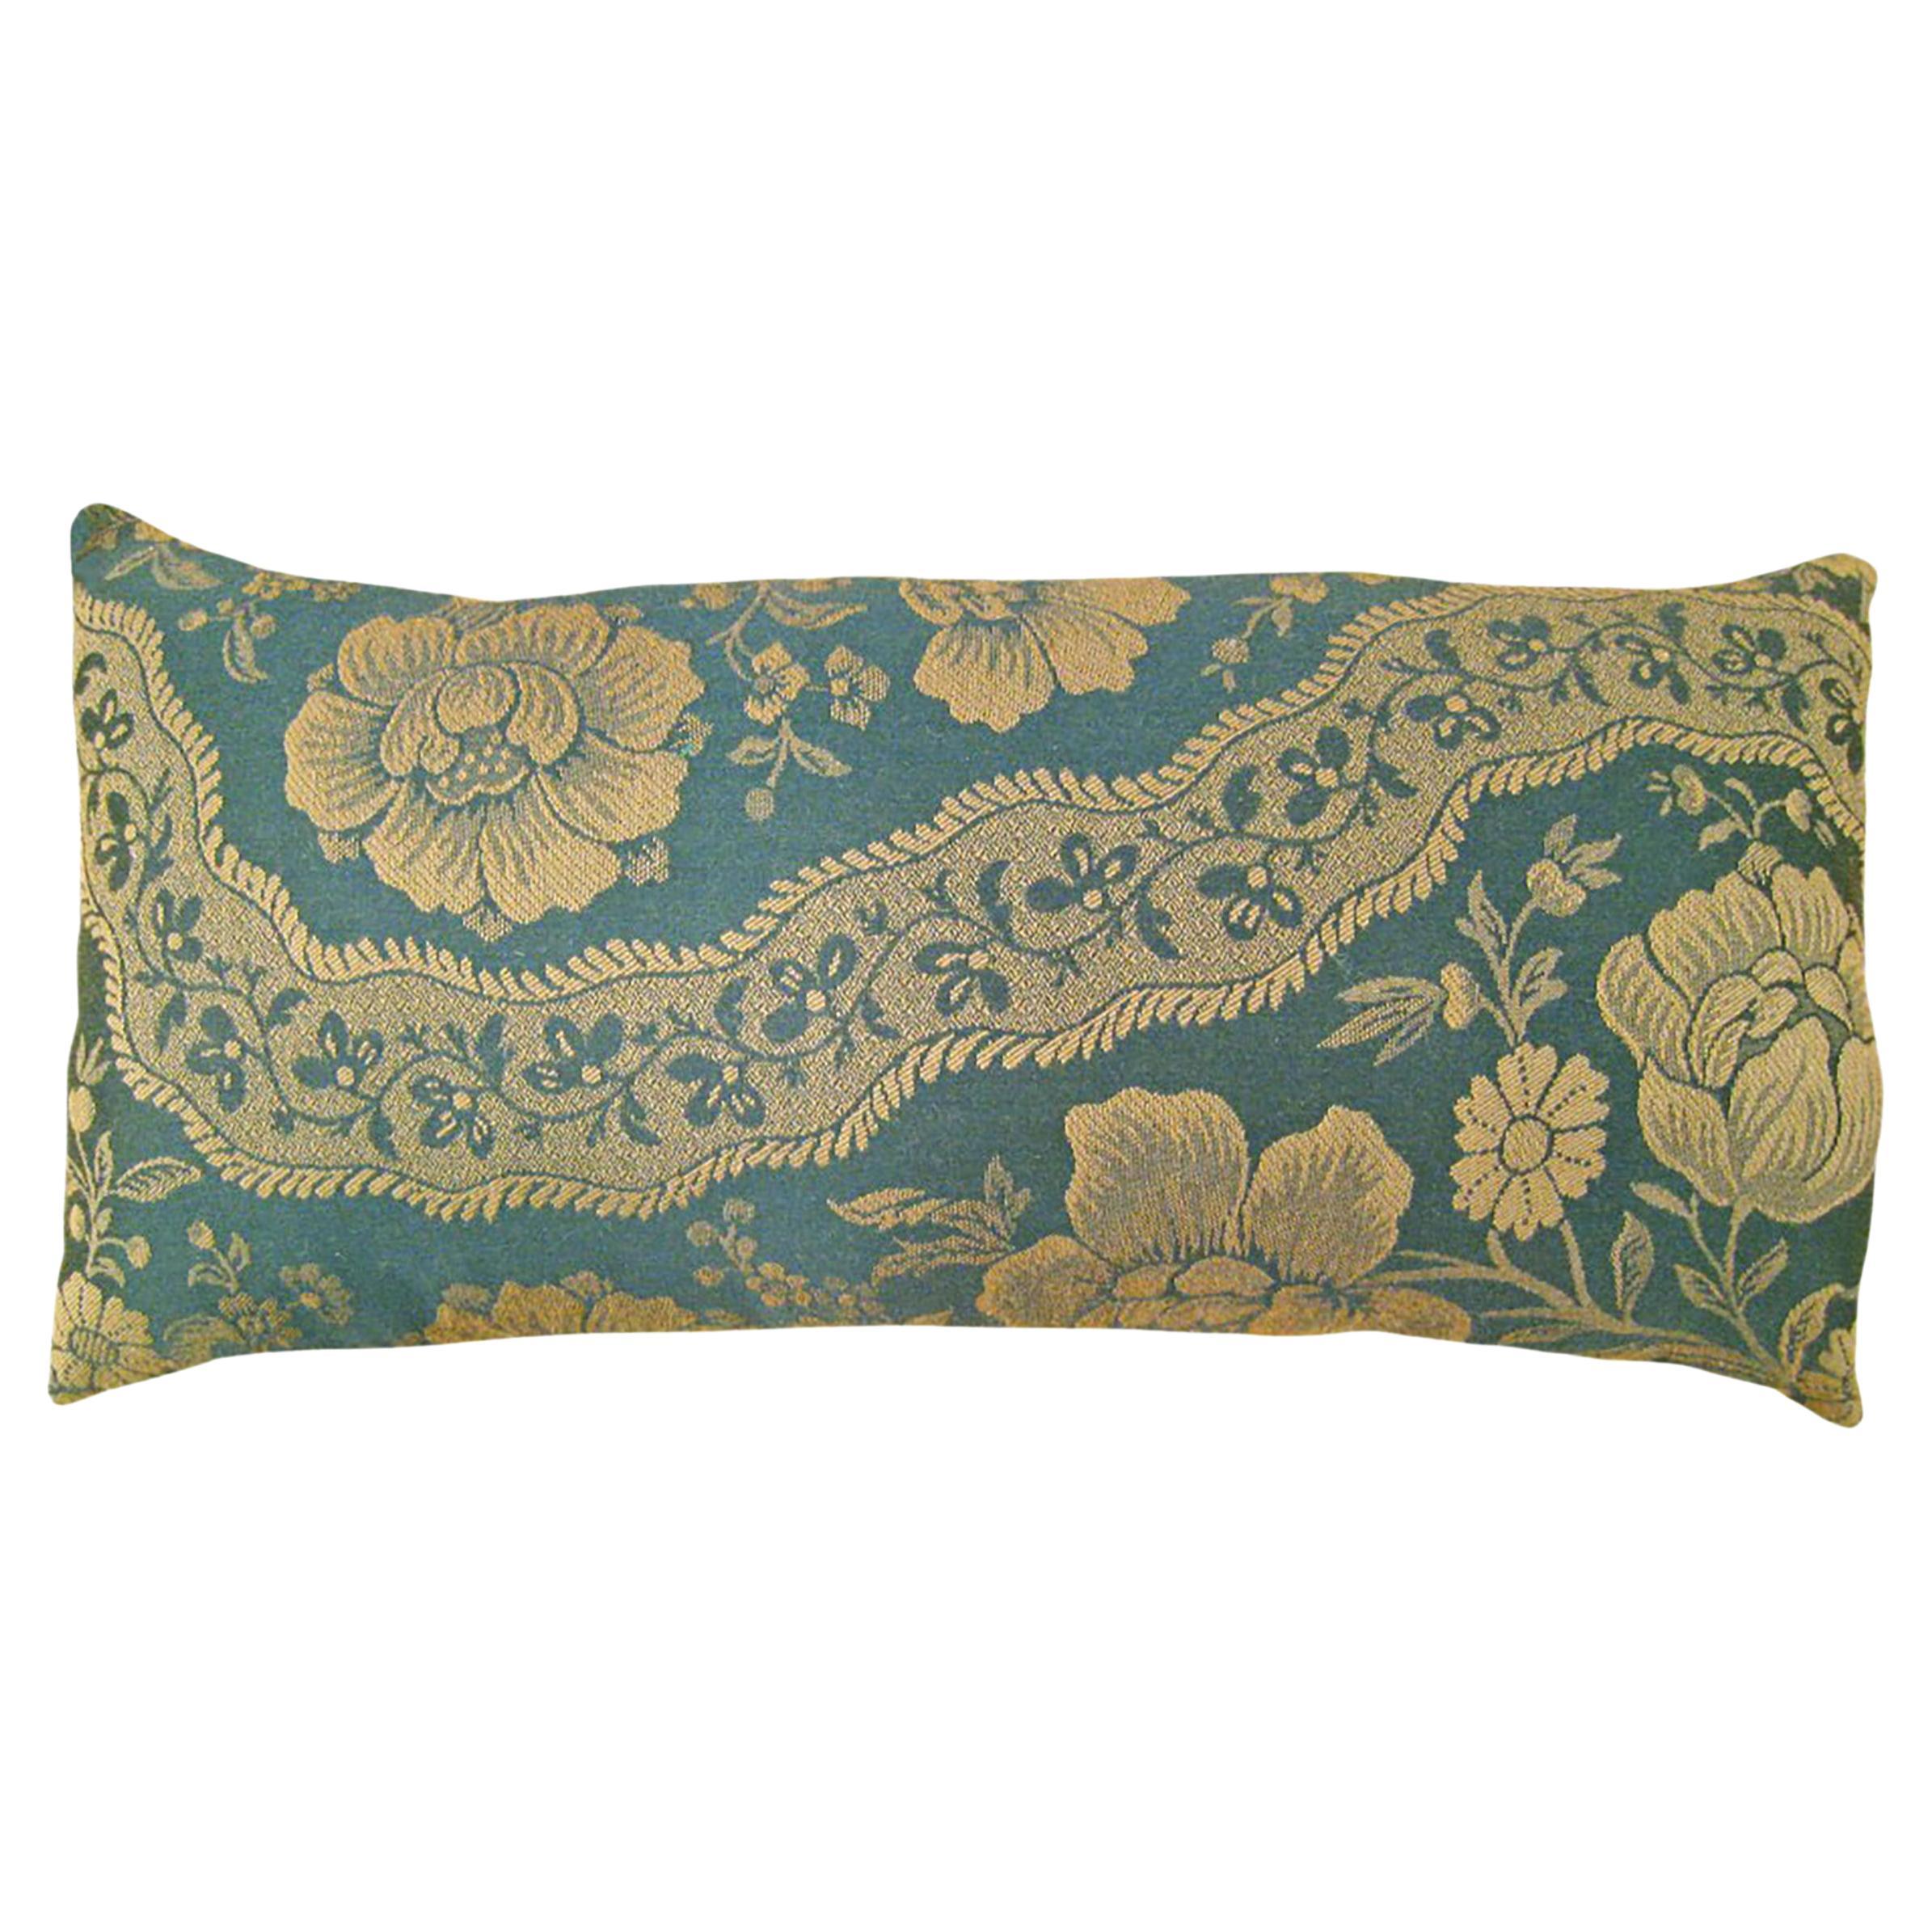 Coussin décoratif vintage européen en tissu chinoiserie avec motif floral